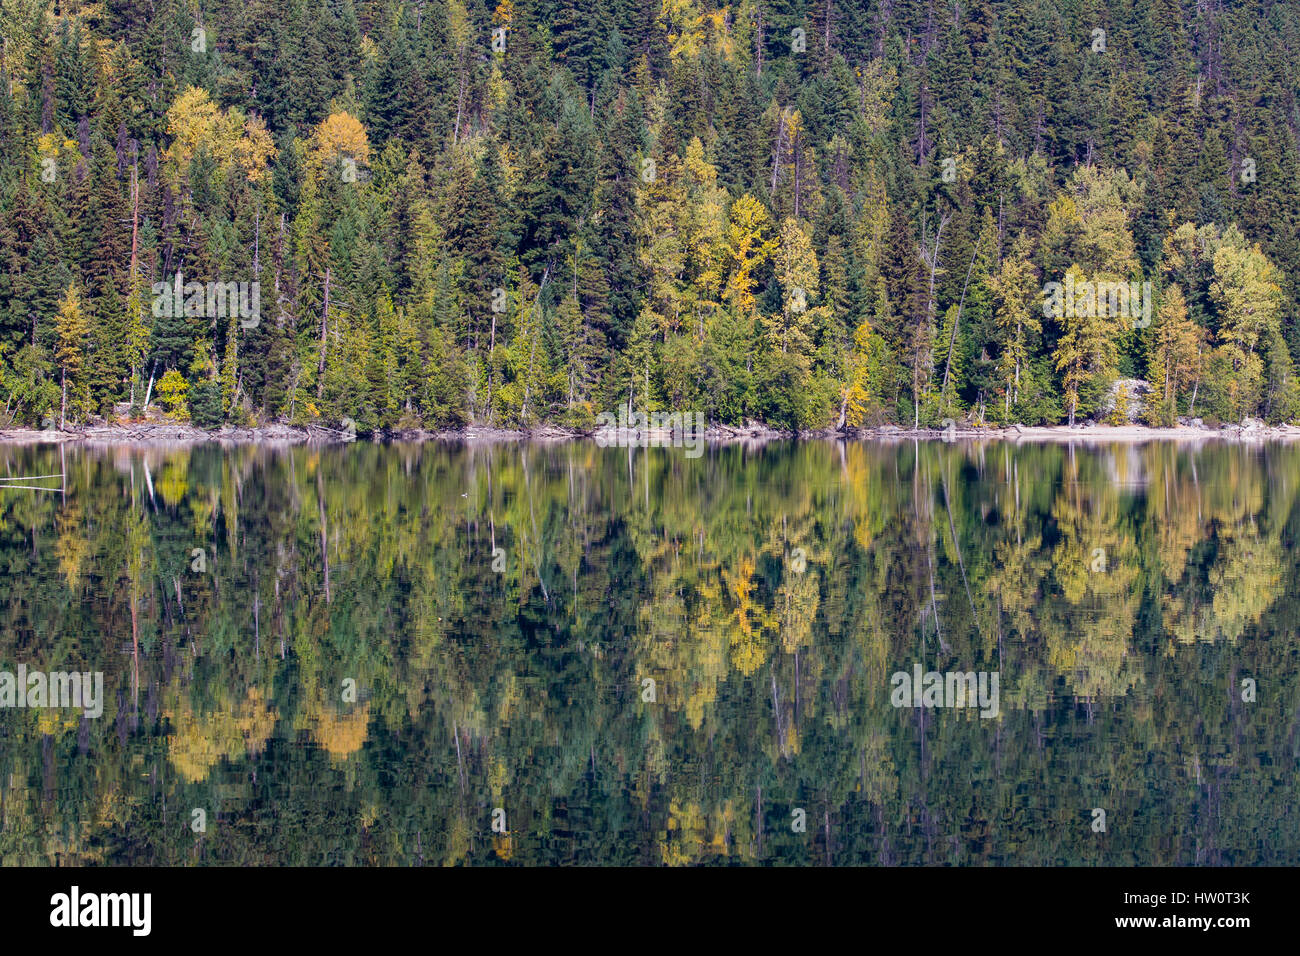 La symétrie et la couleur à l'automne. Eaux calmes de Birkenhead Lake, C.-B., en forêt mixte magnifique reflet-miroir comme les eaux. Banque D'Images